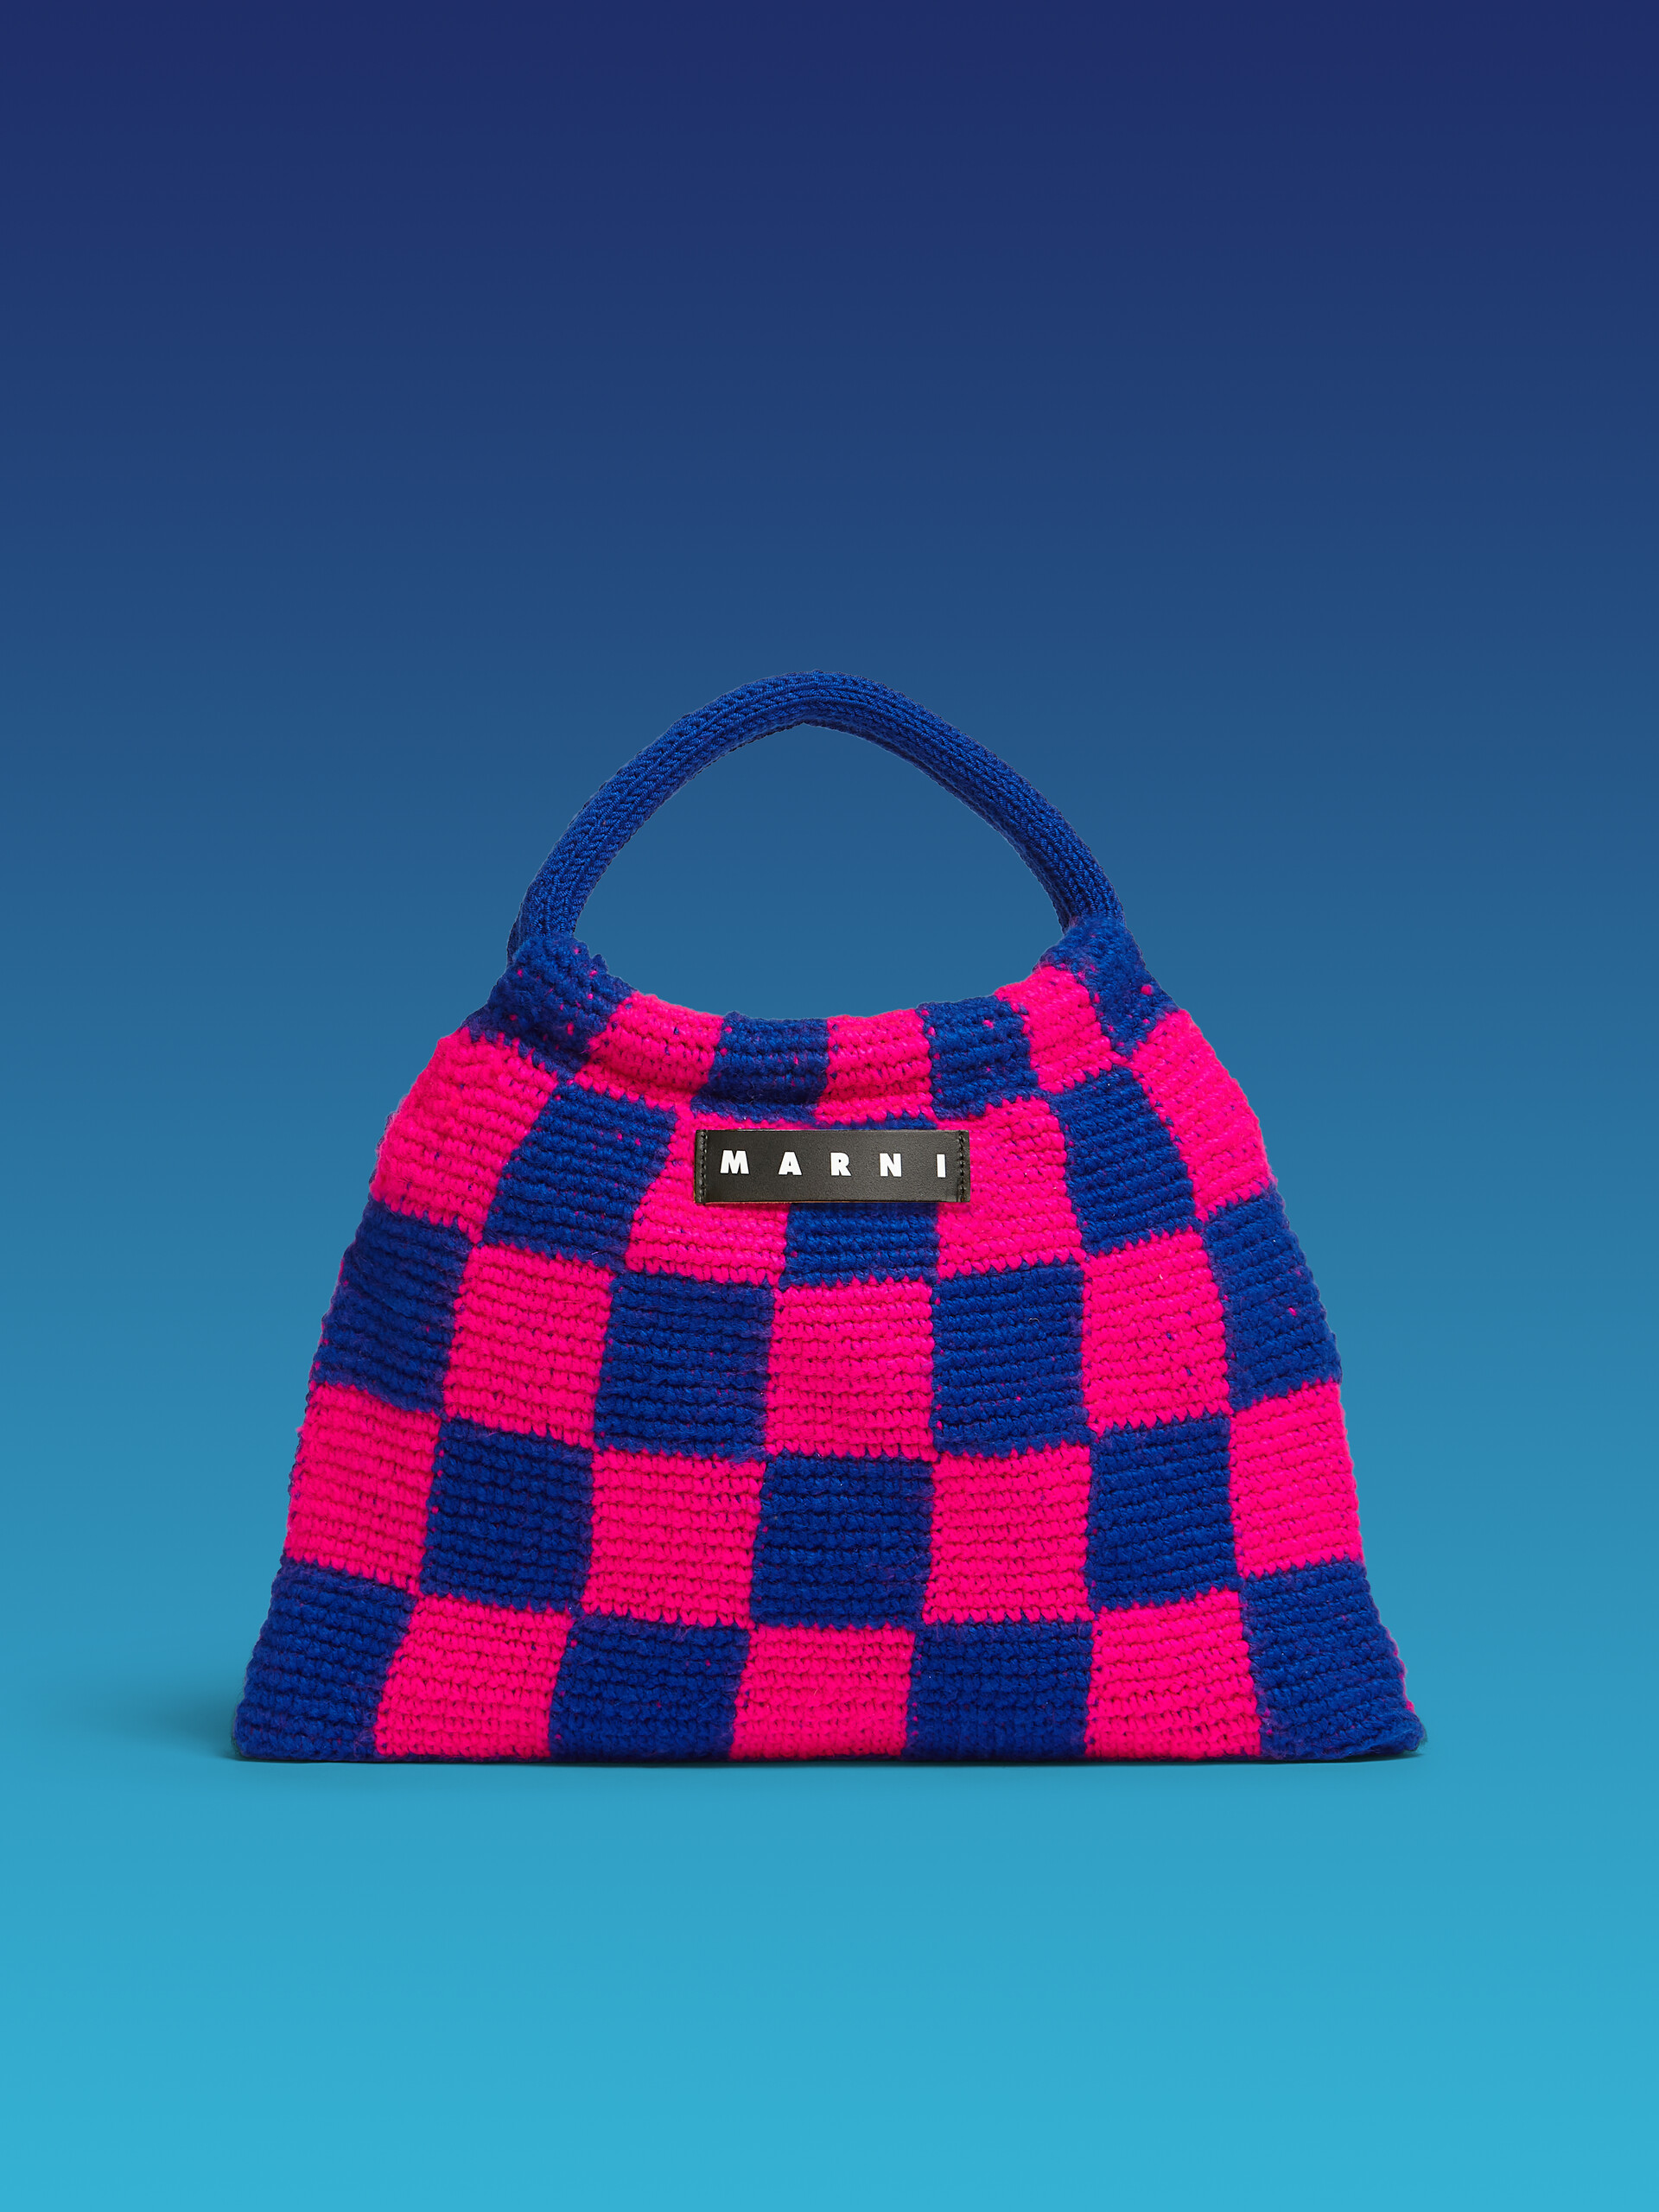 Bolso MARNI MARKET GRANNY de croché rosa y azul - Bolsos shopper - Image 1